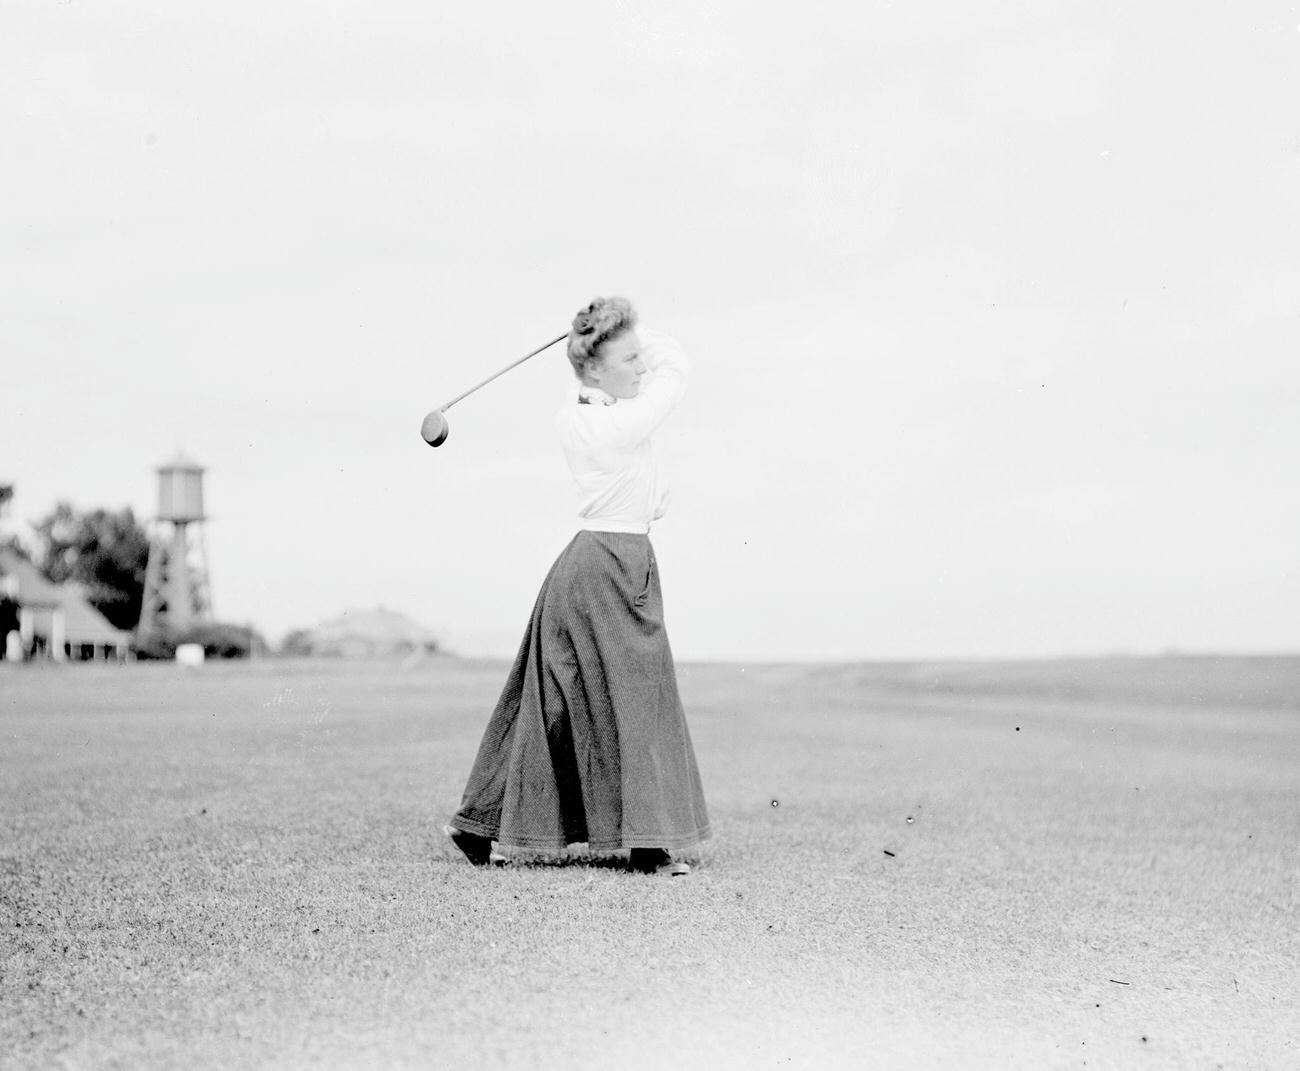 Florence Borden swinging golf club, Chicago Golf Club, 1903.